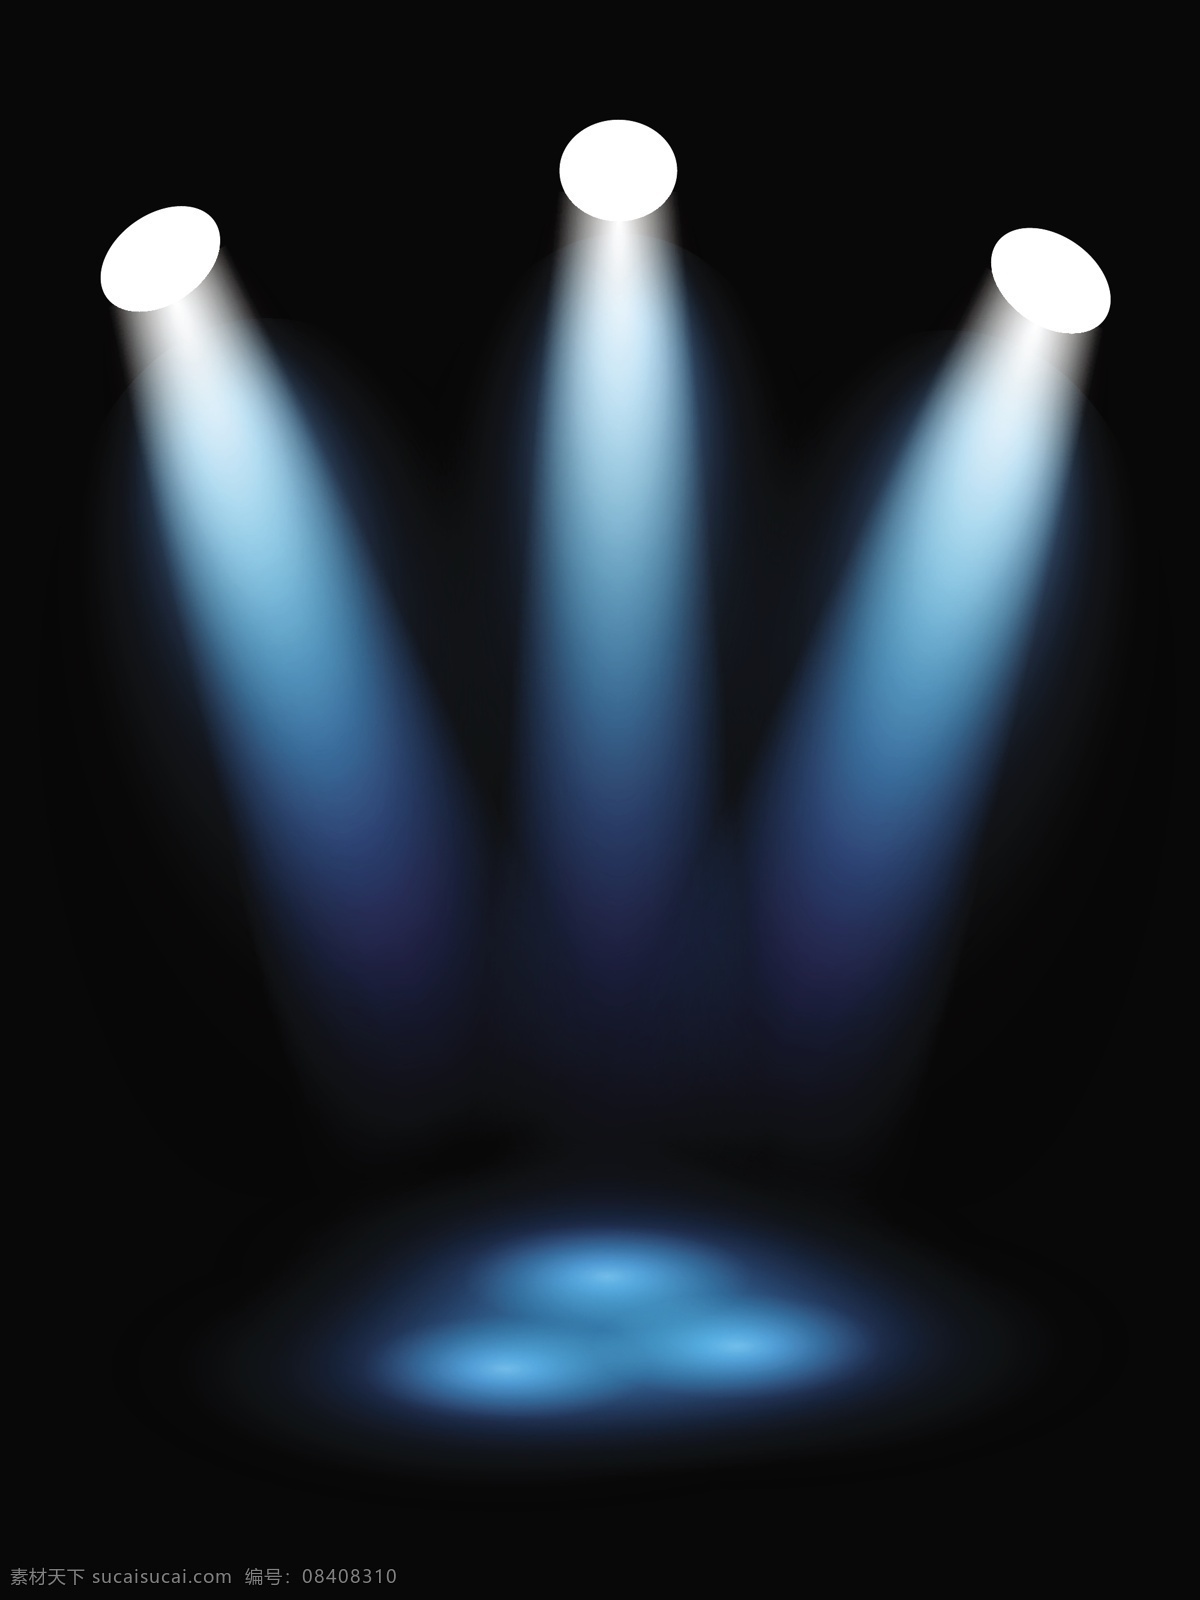 蓝色灯光效果 灯光 灯光效果 彩色灯光 灯光素材 舞台灯光 得到素材 底纹边框 矢量素材 黑色